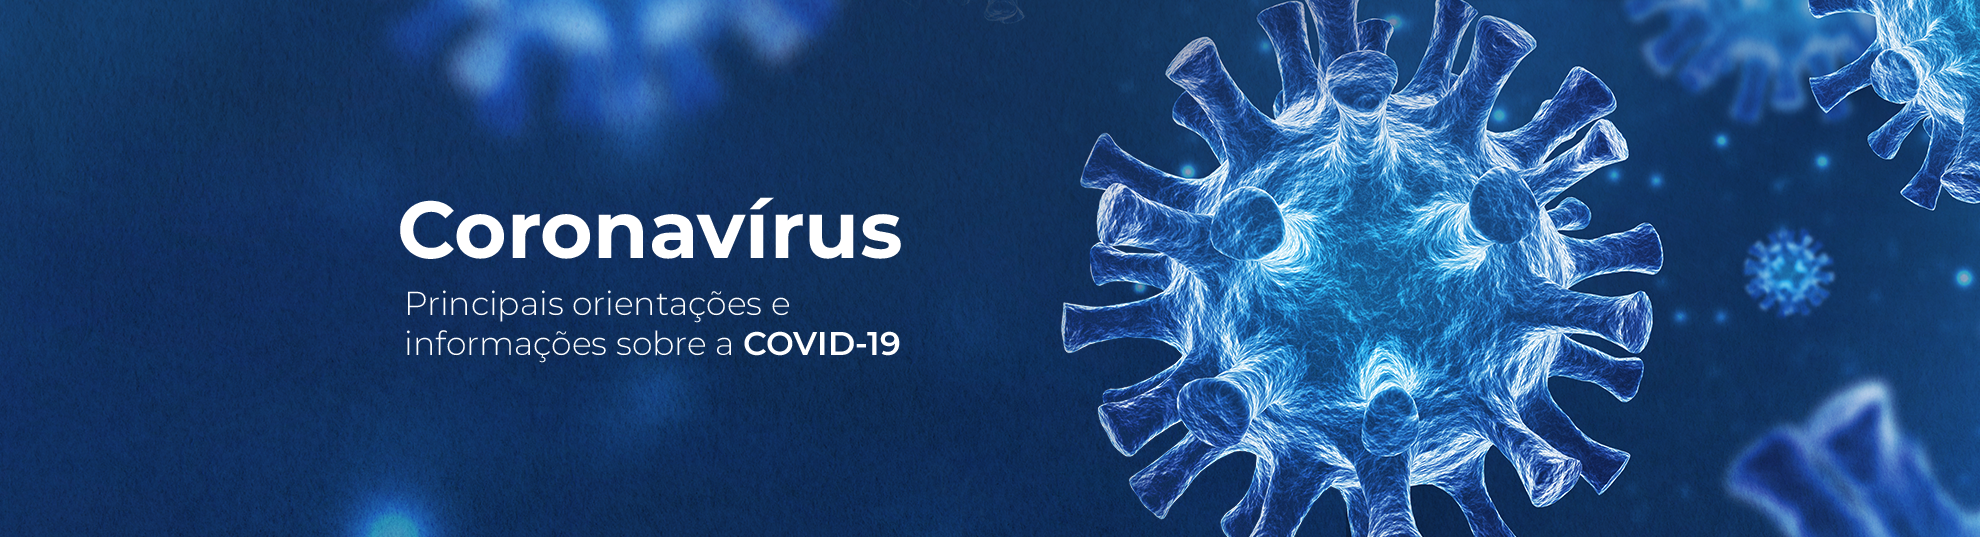 CoronaVírus, principais orientações e imformações sobre a COVID-19